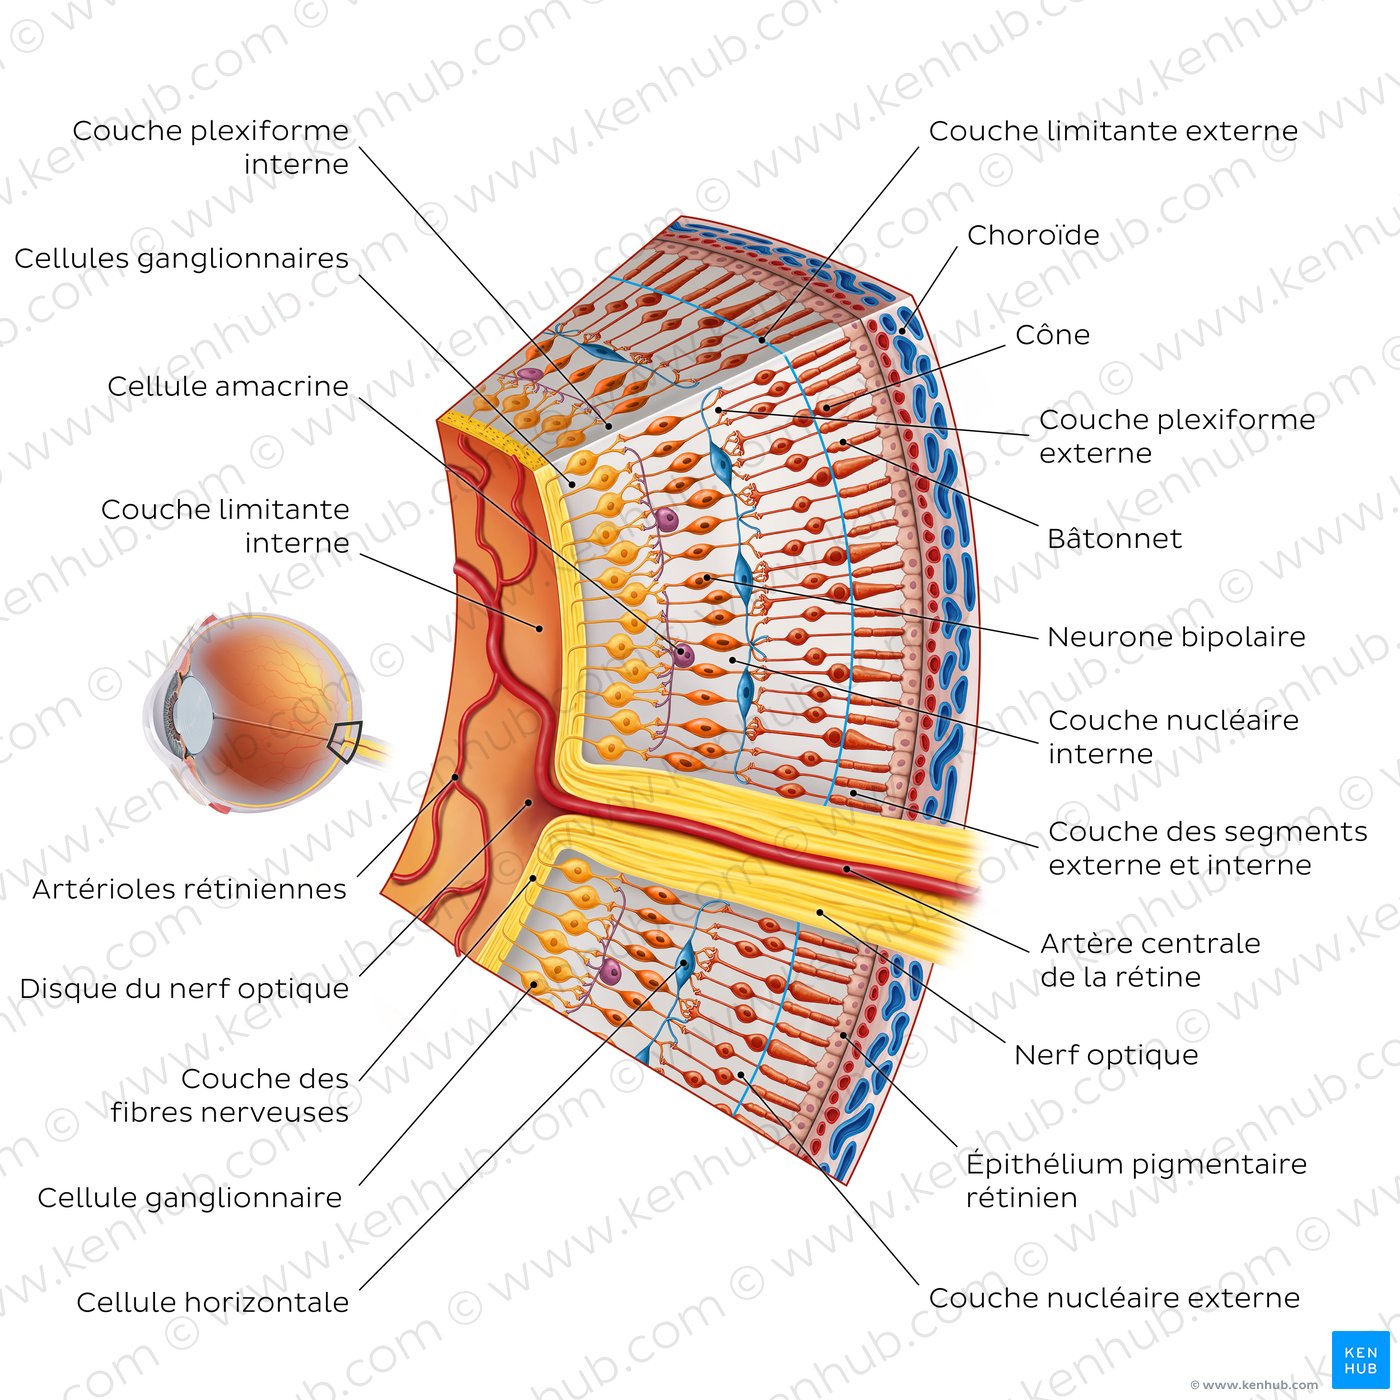 Couches et cellules de la rétine (schéma)